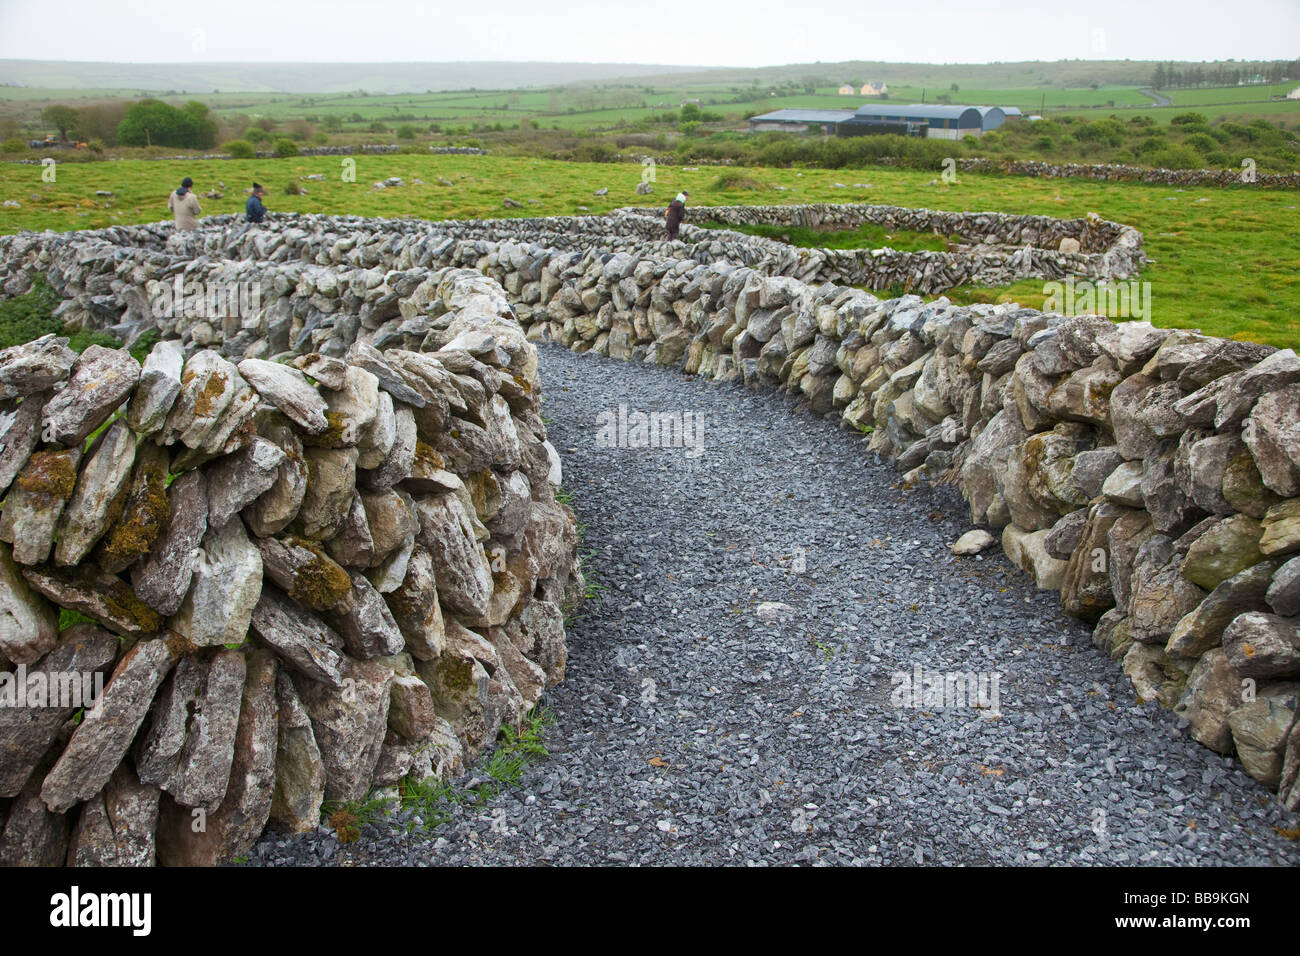 Bague Celtique de Caherconnell Fort de murs en pierre Clarens Burren Comté de Clare Irlande Irlande République d'Irlande Europe EU Banque D'Images